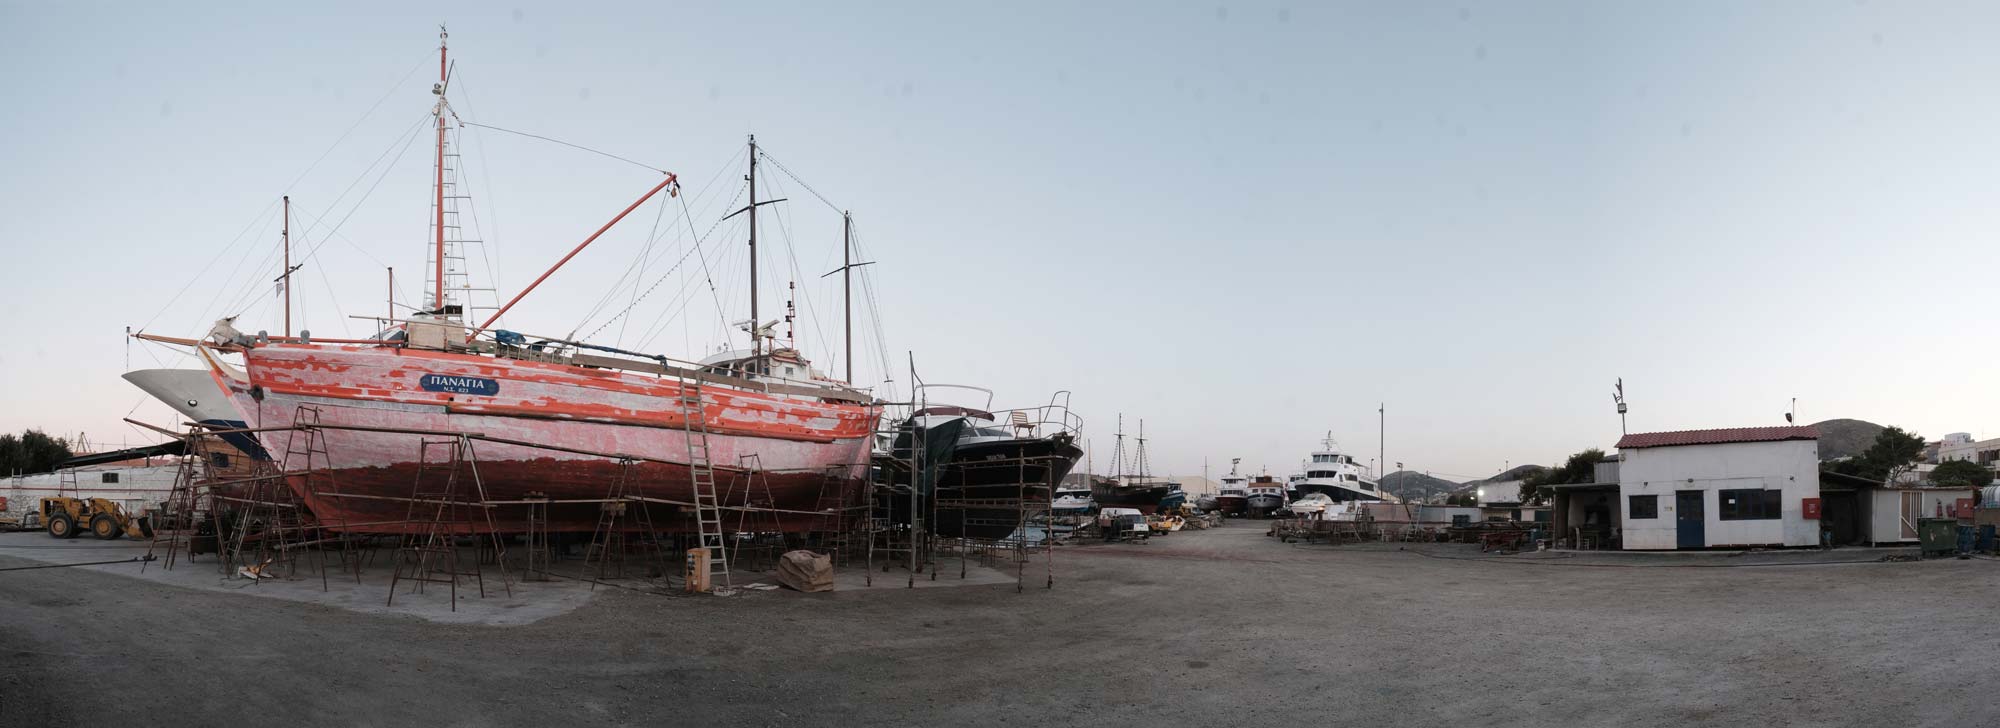 Panorama of Tarsanas shipyard